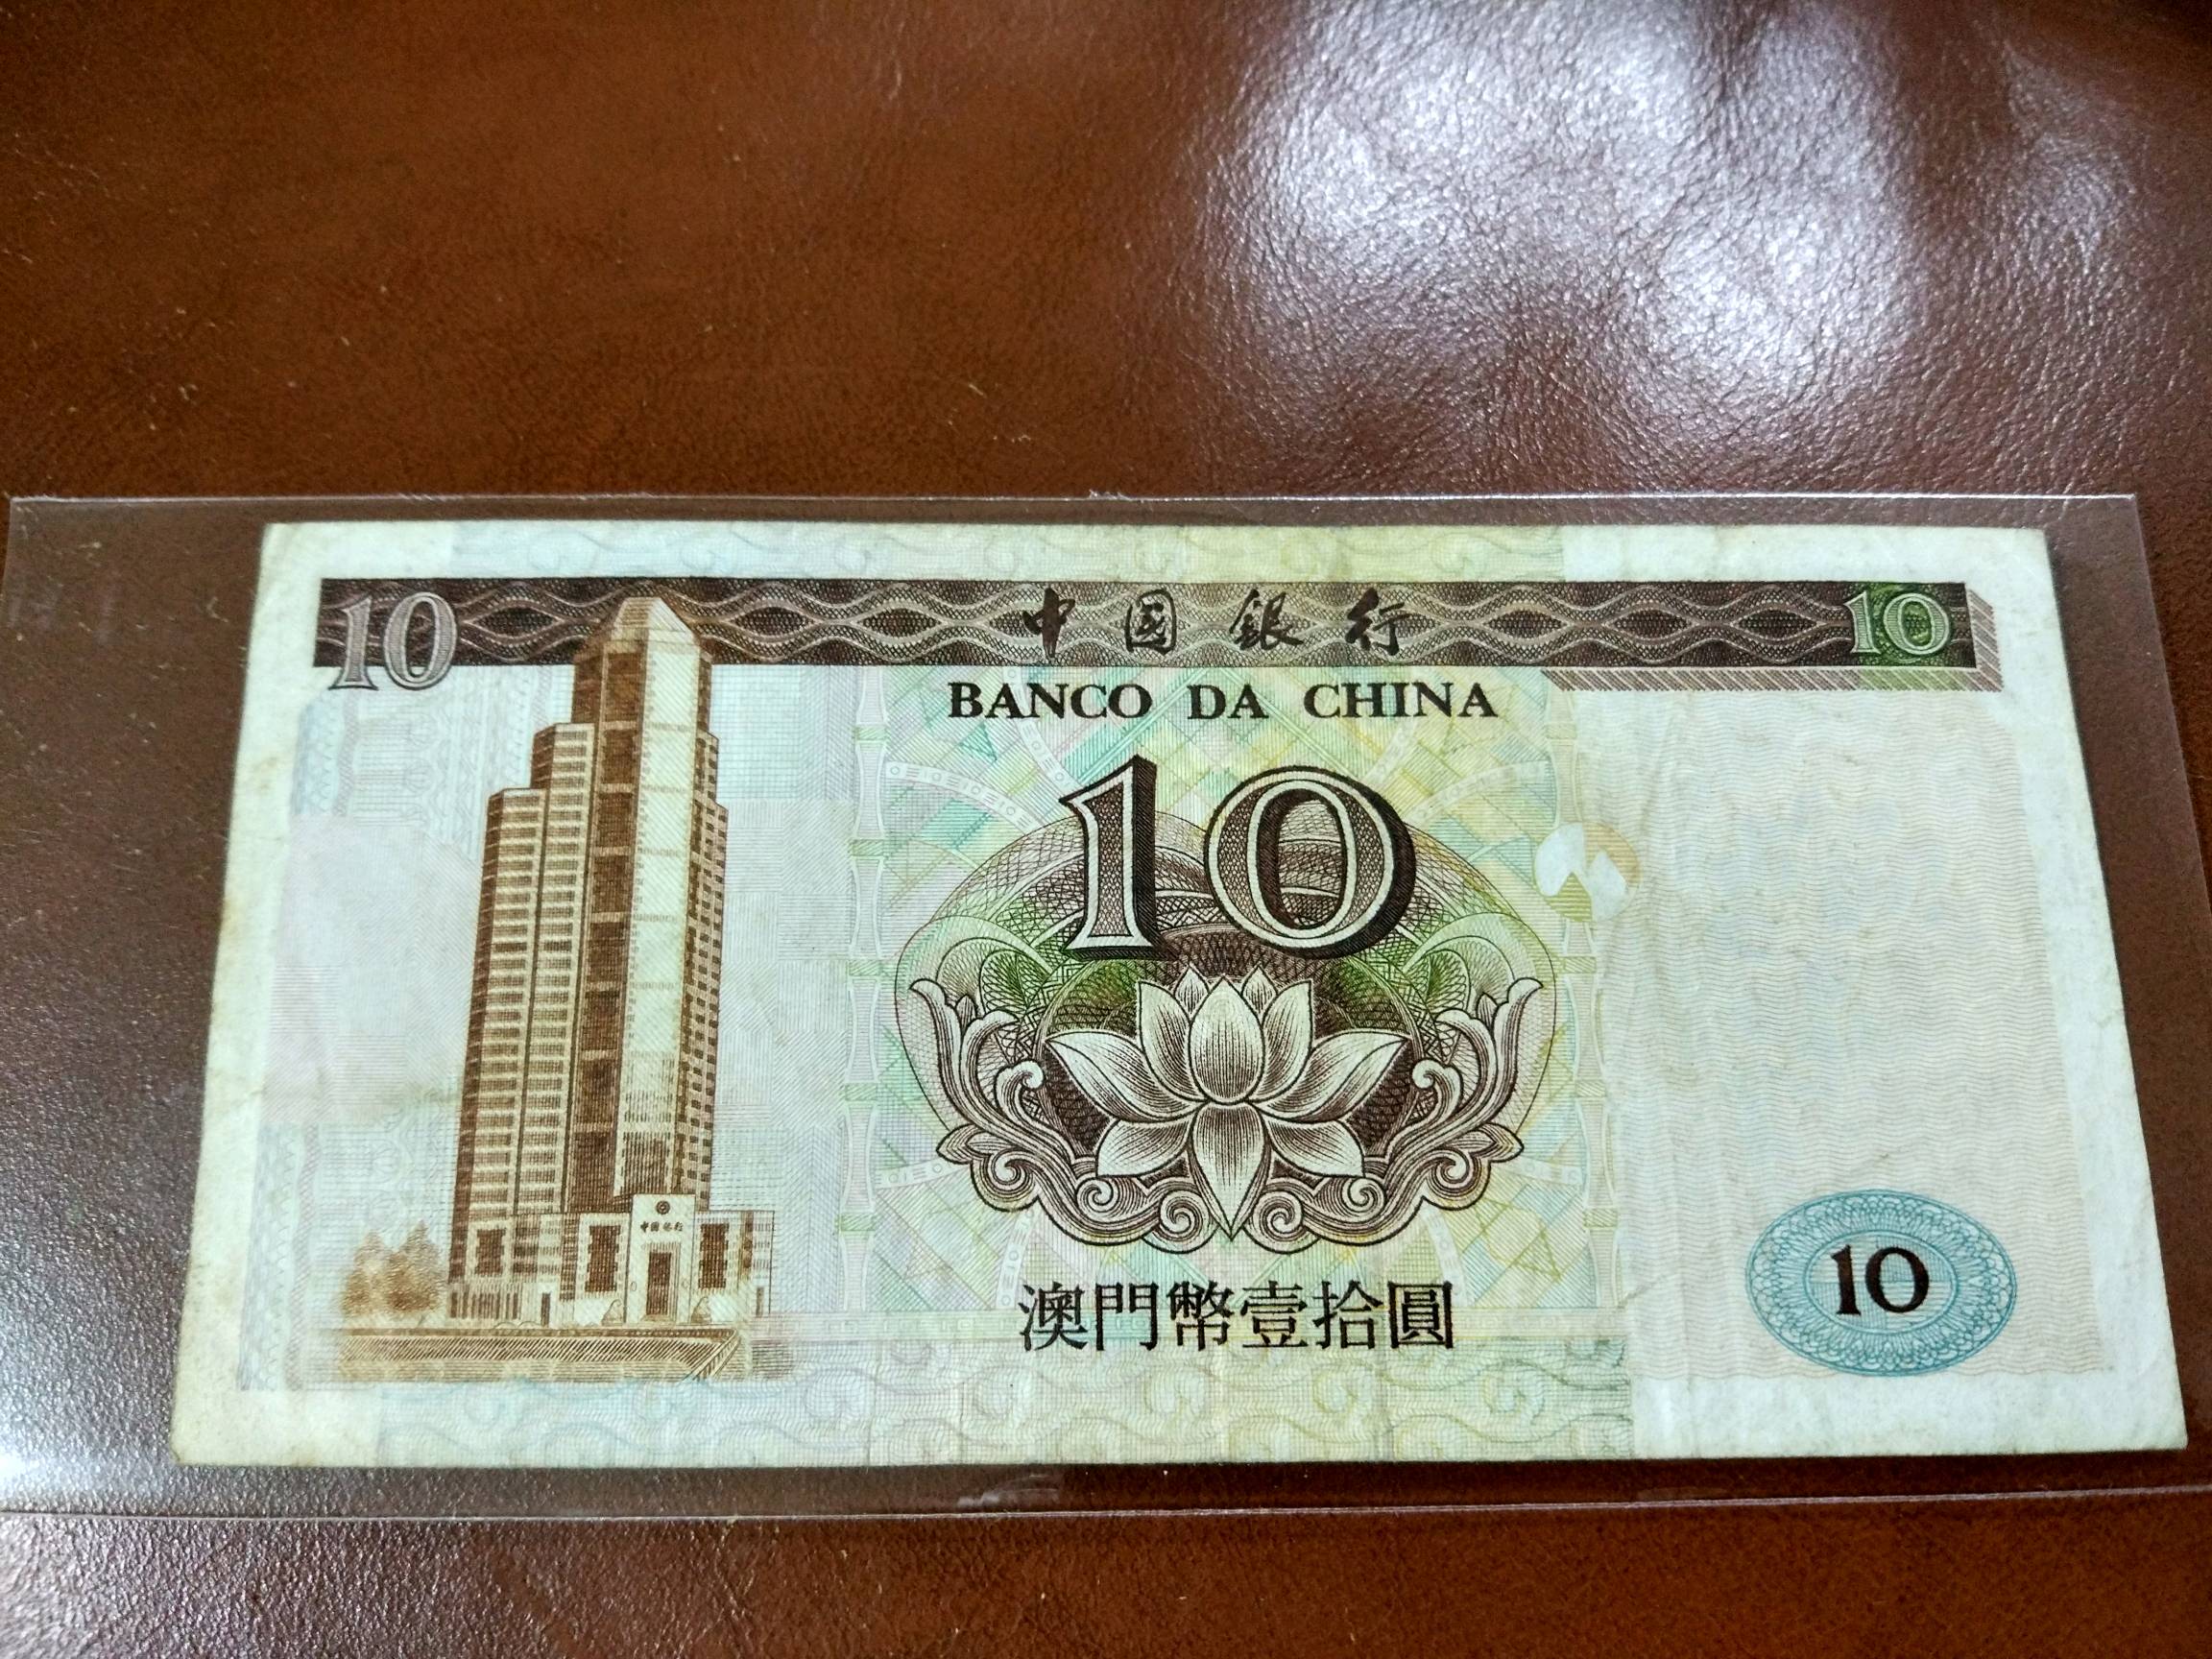 澳门币10元图案图片